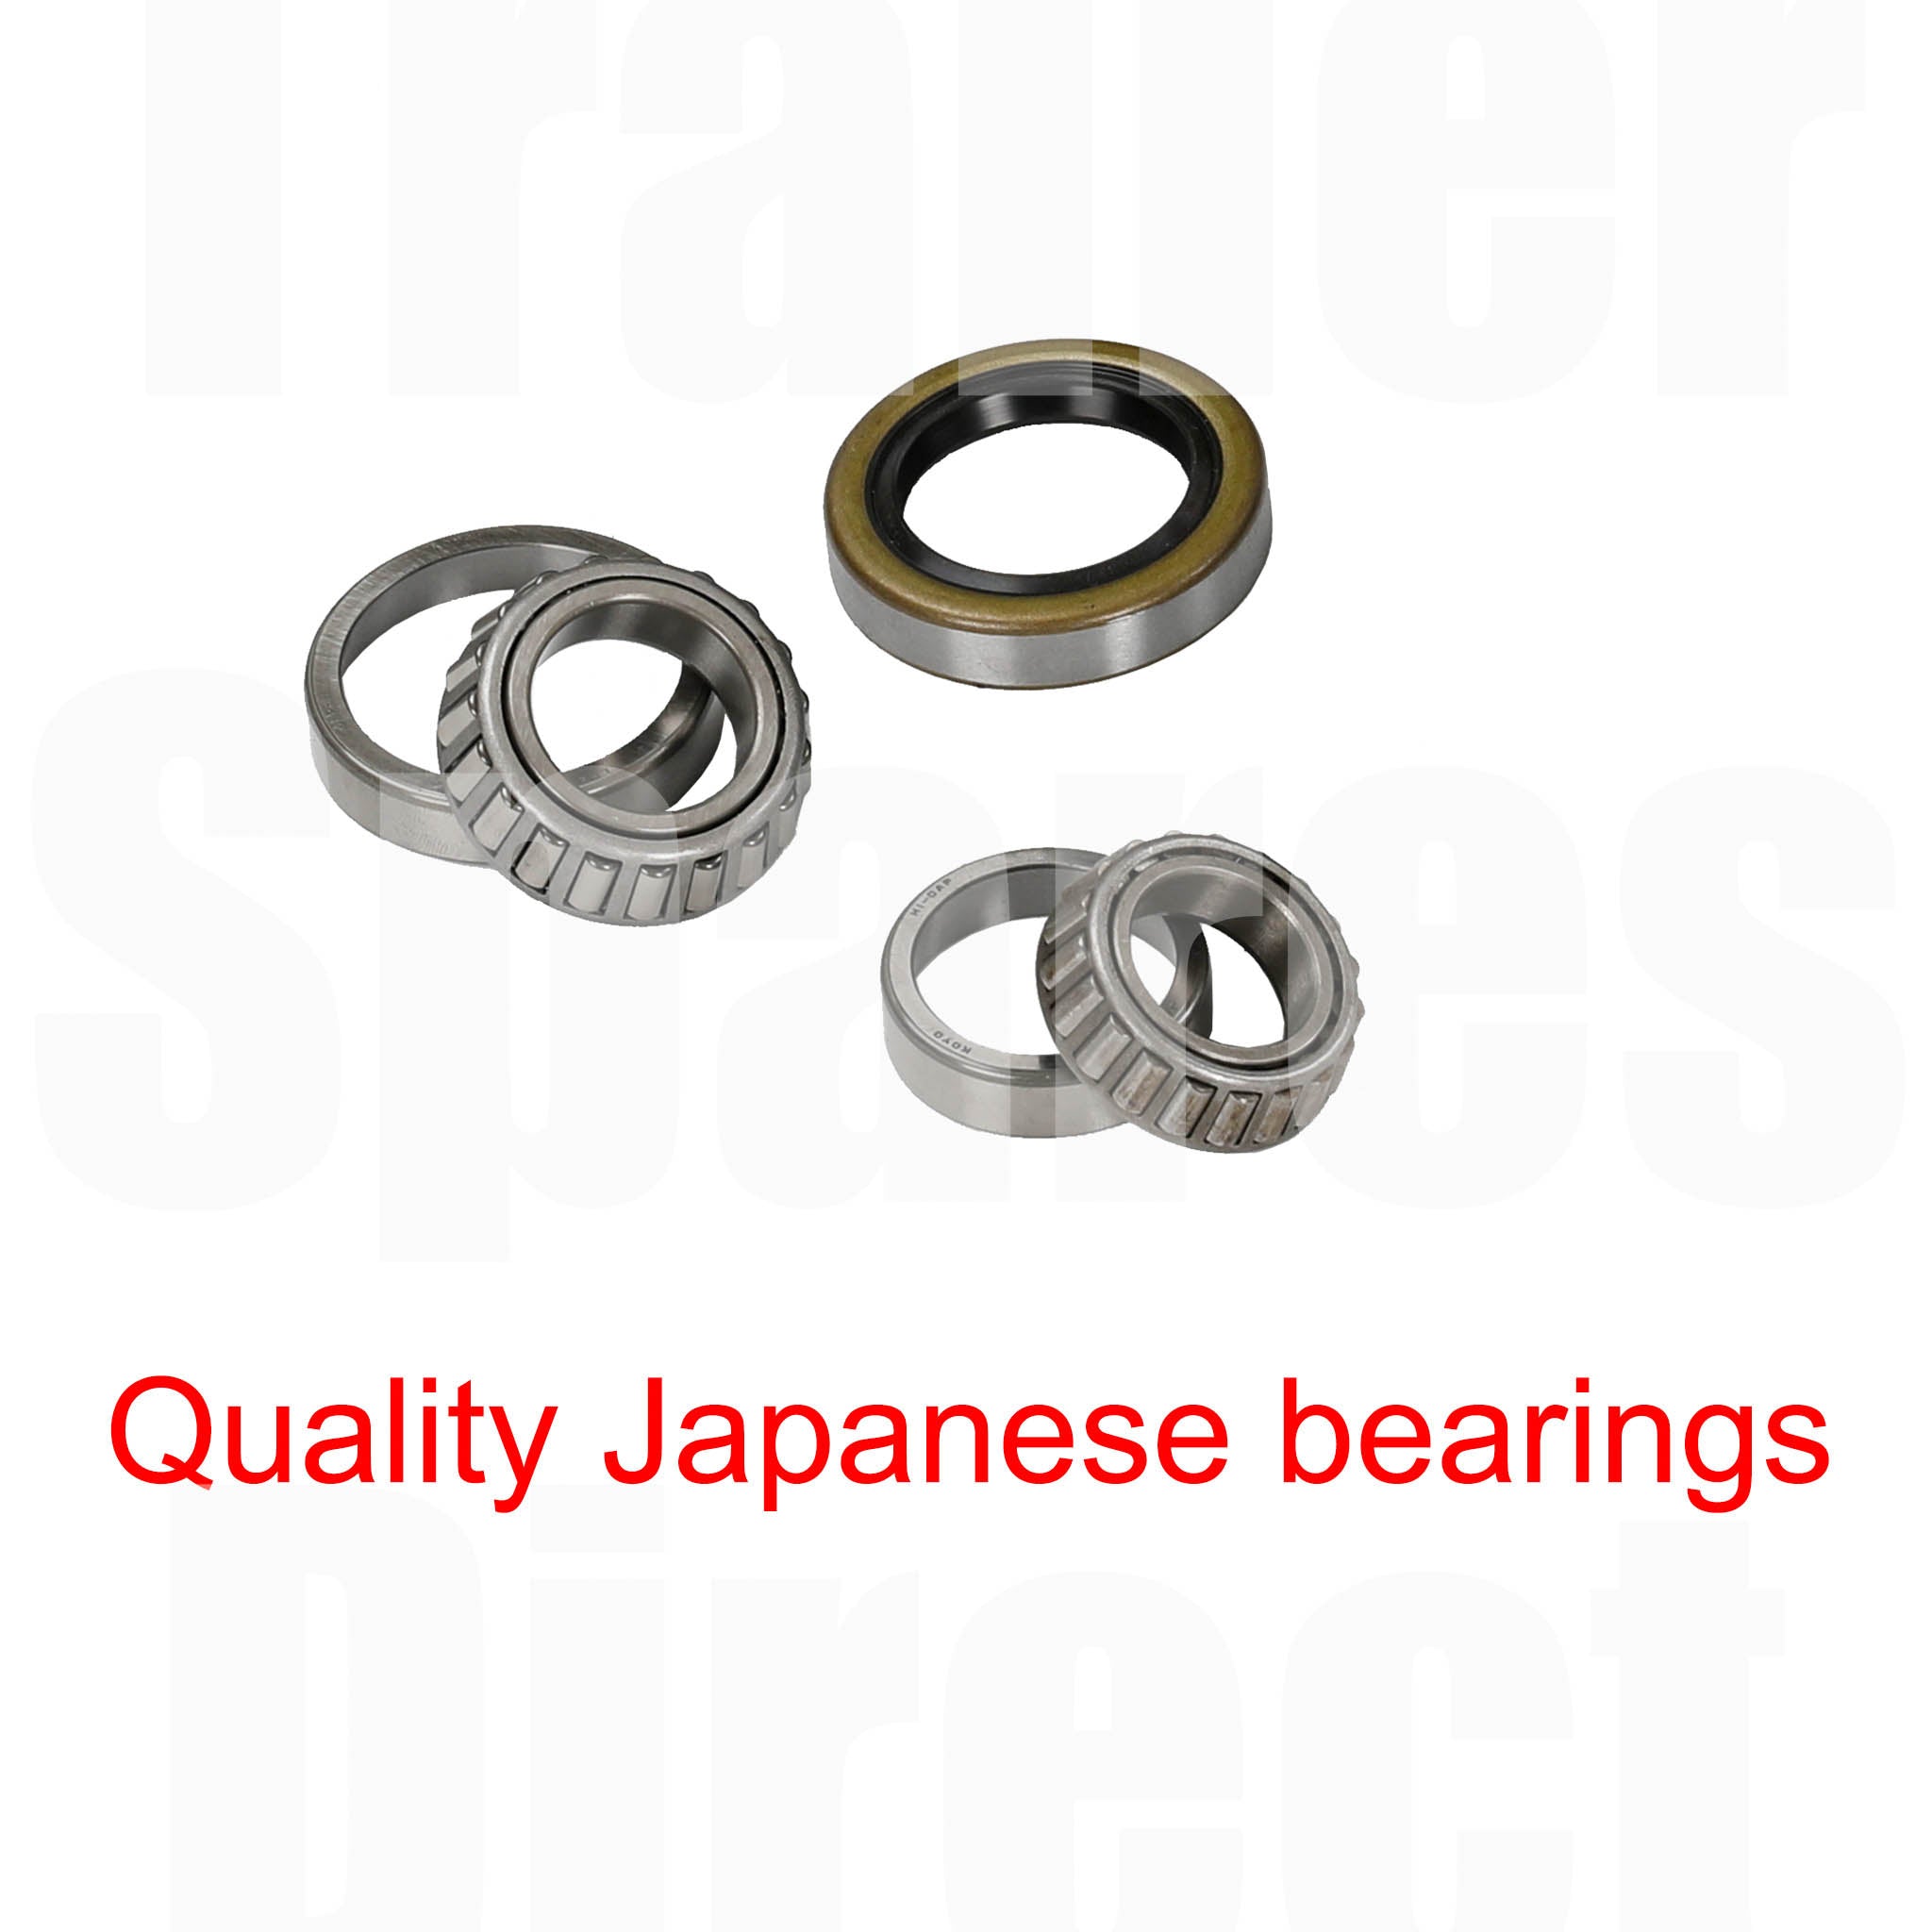 Bearing Kit - US1.8 bearings with hub seal - 1 set